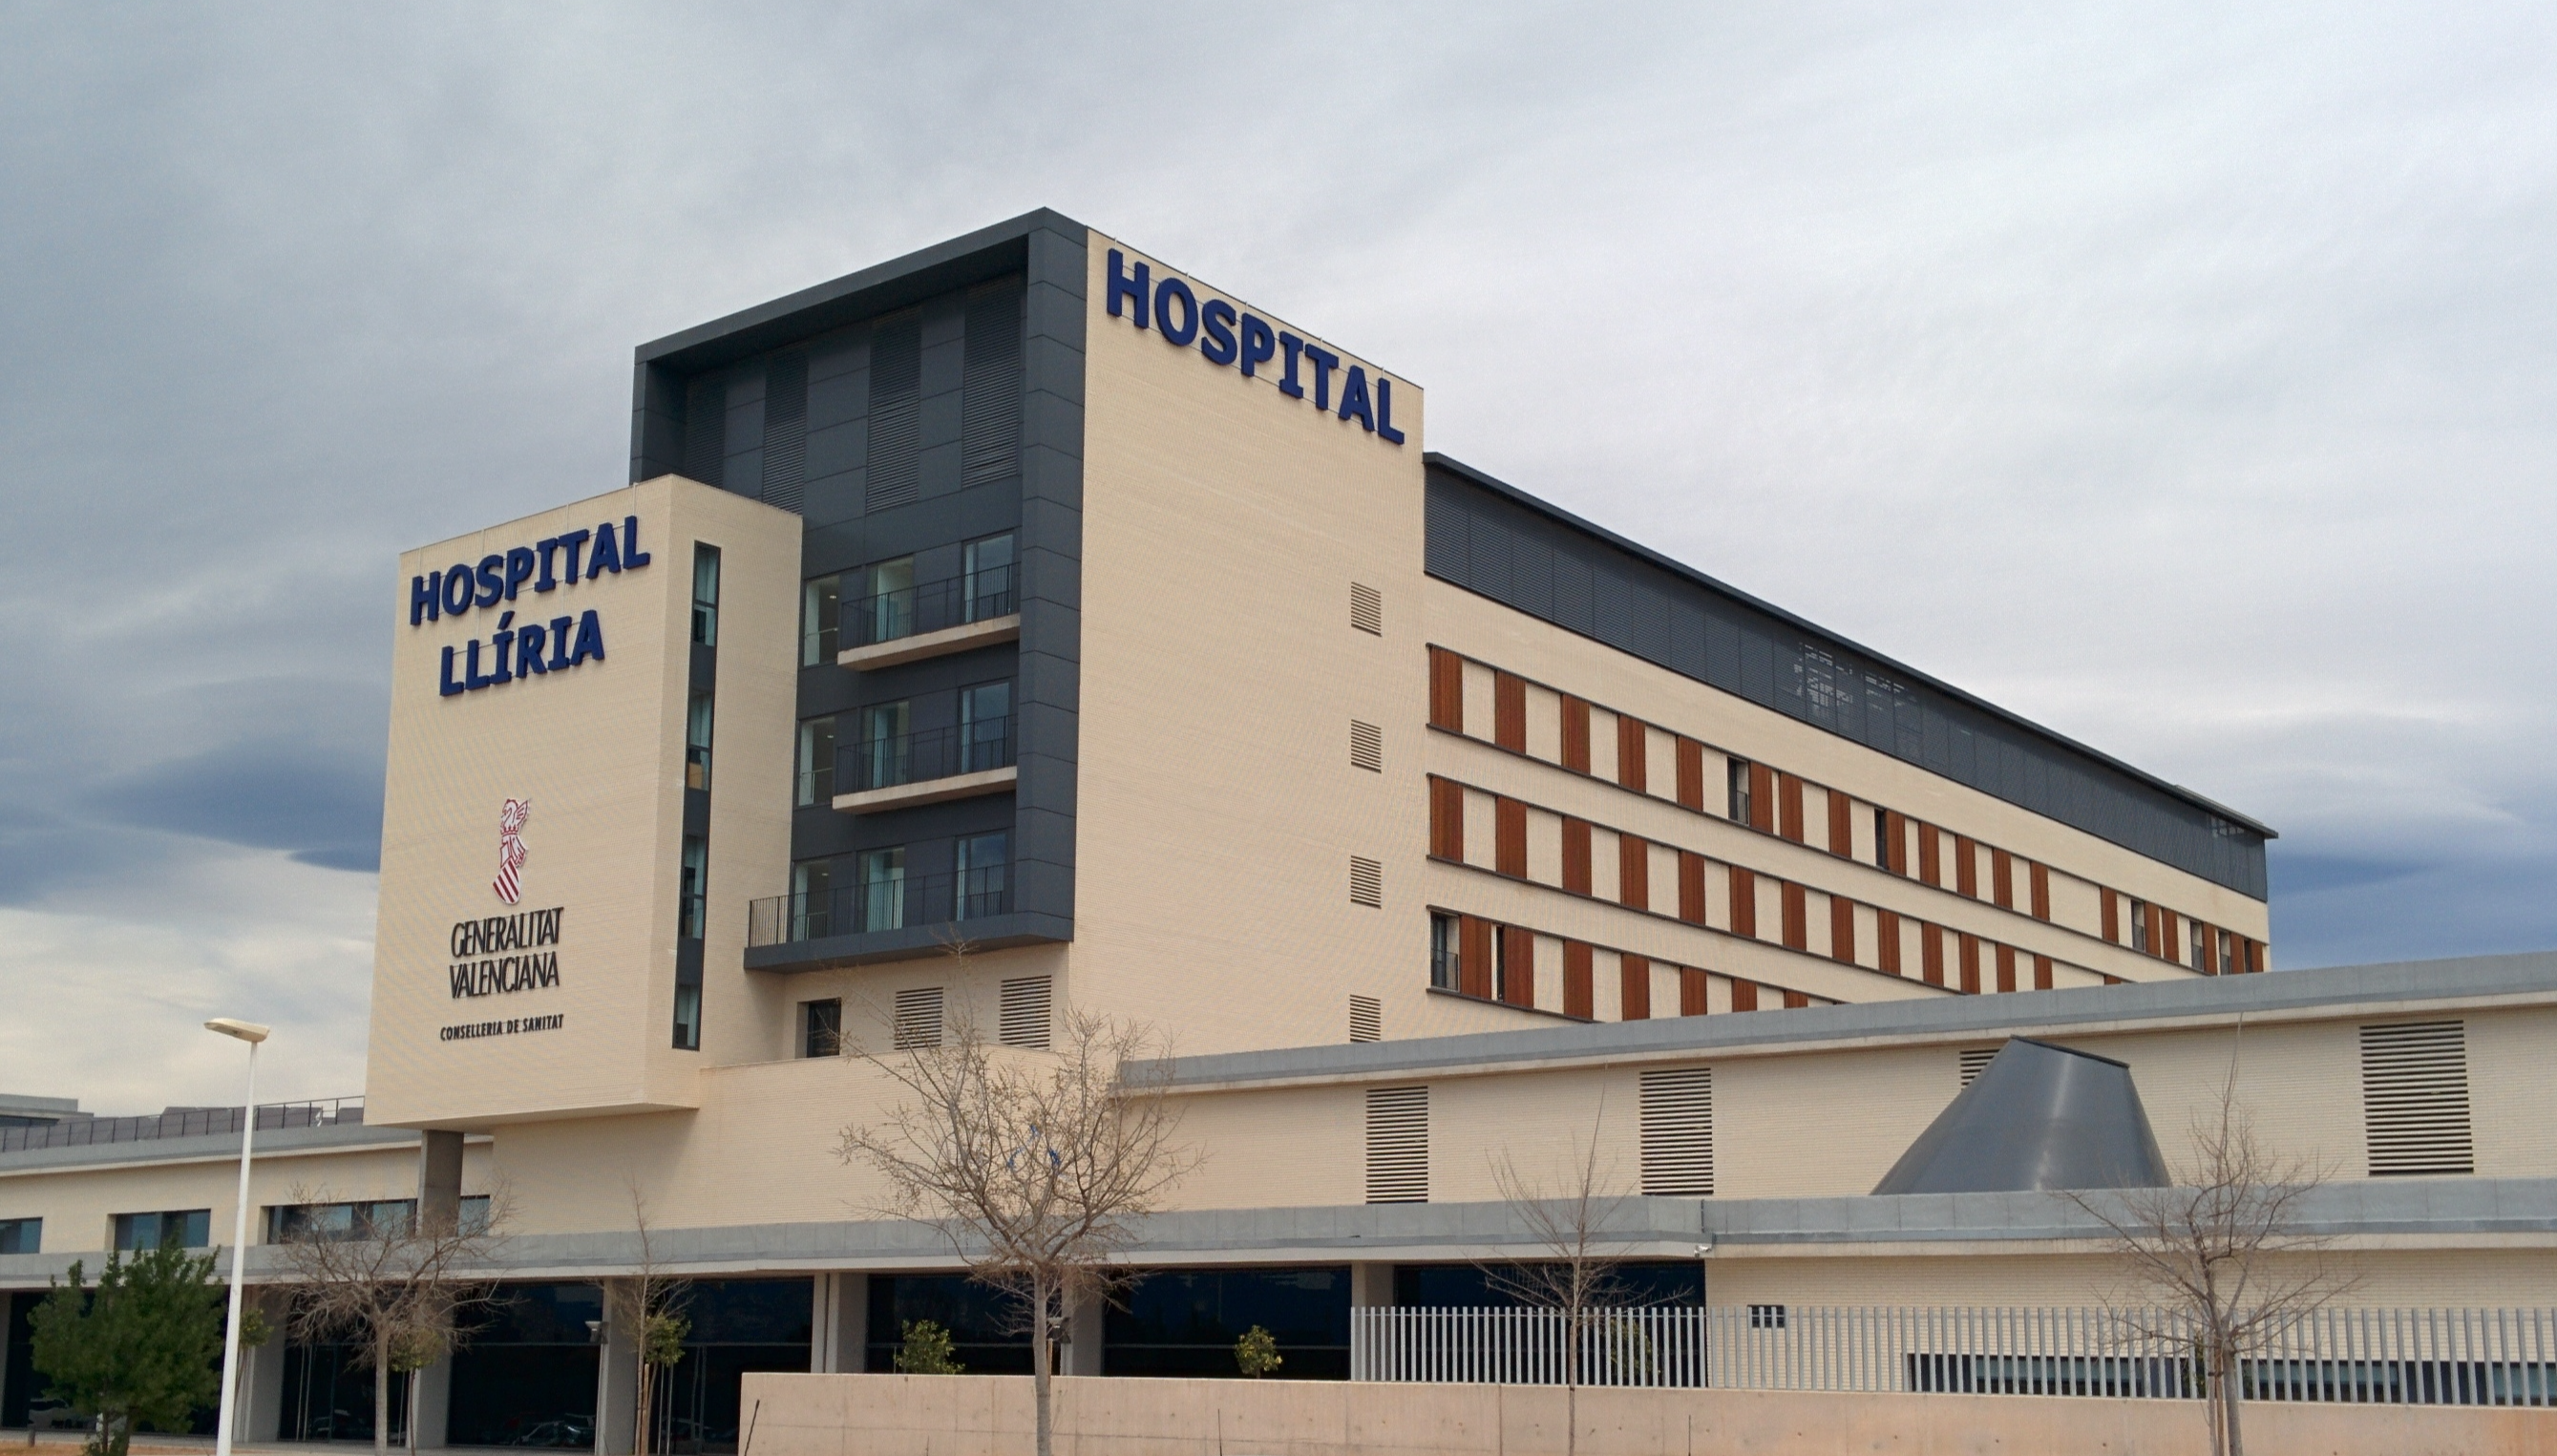 HOSPITAL DE LLIRIA